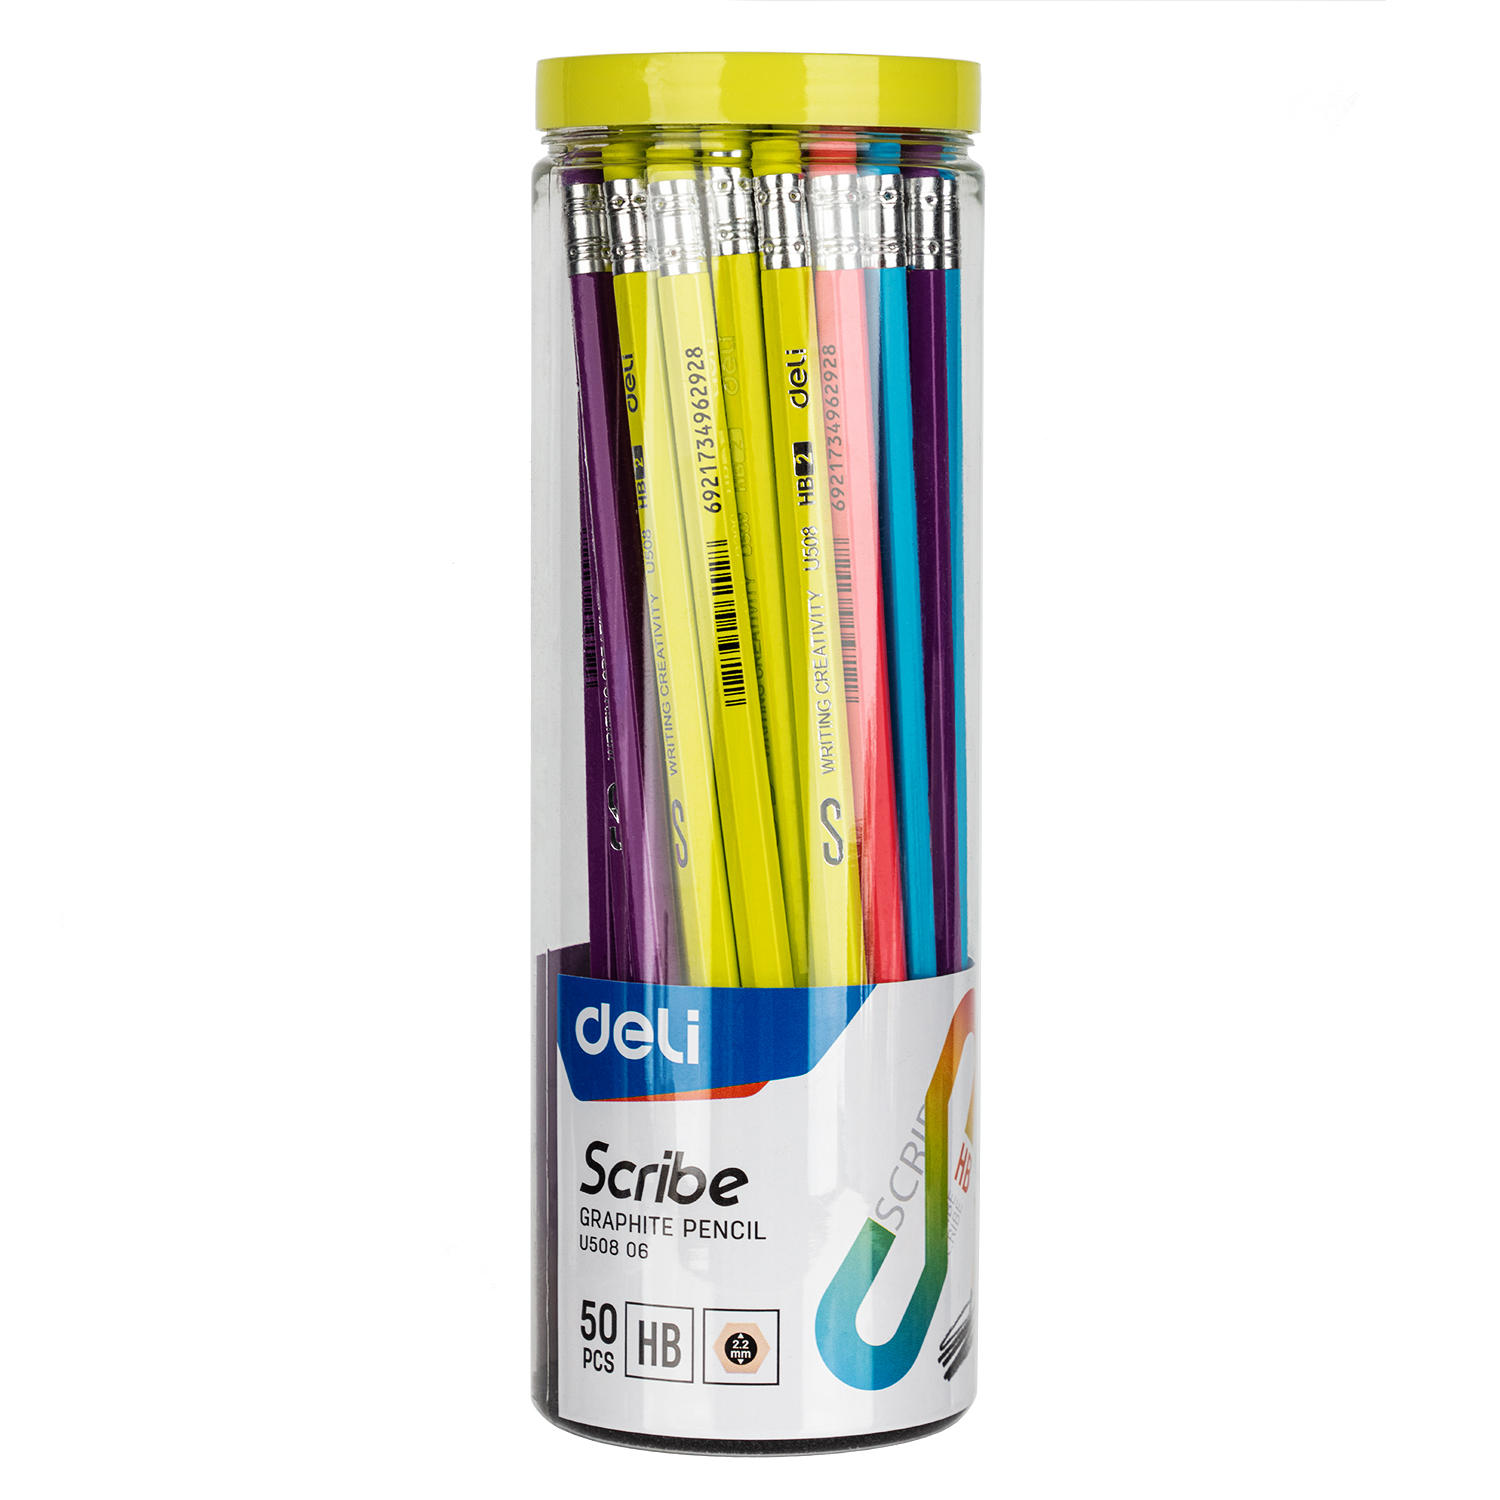 Deli-EU50806 Graphite Pencil